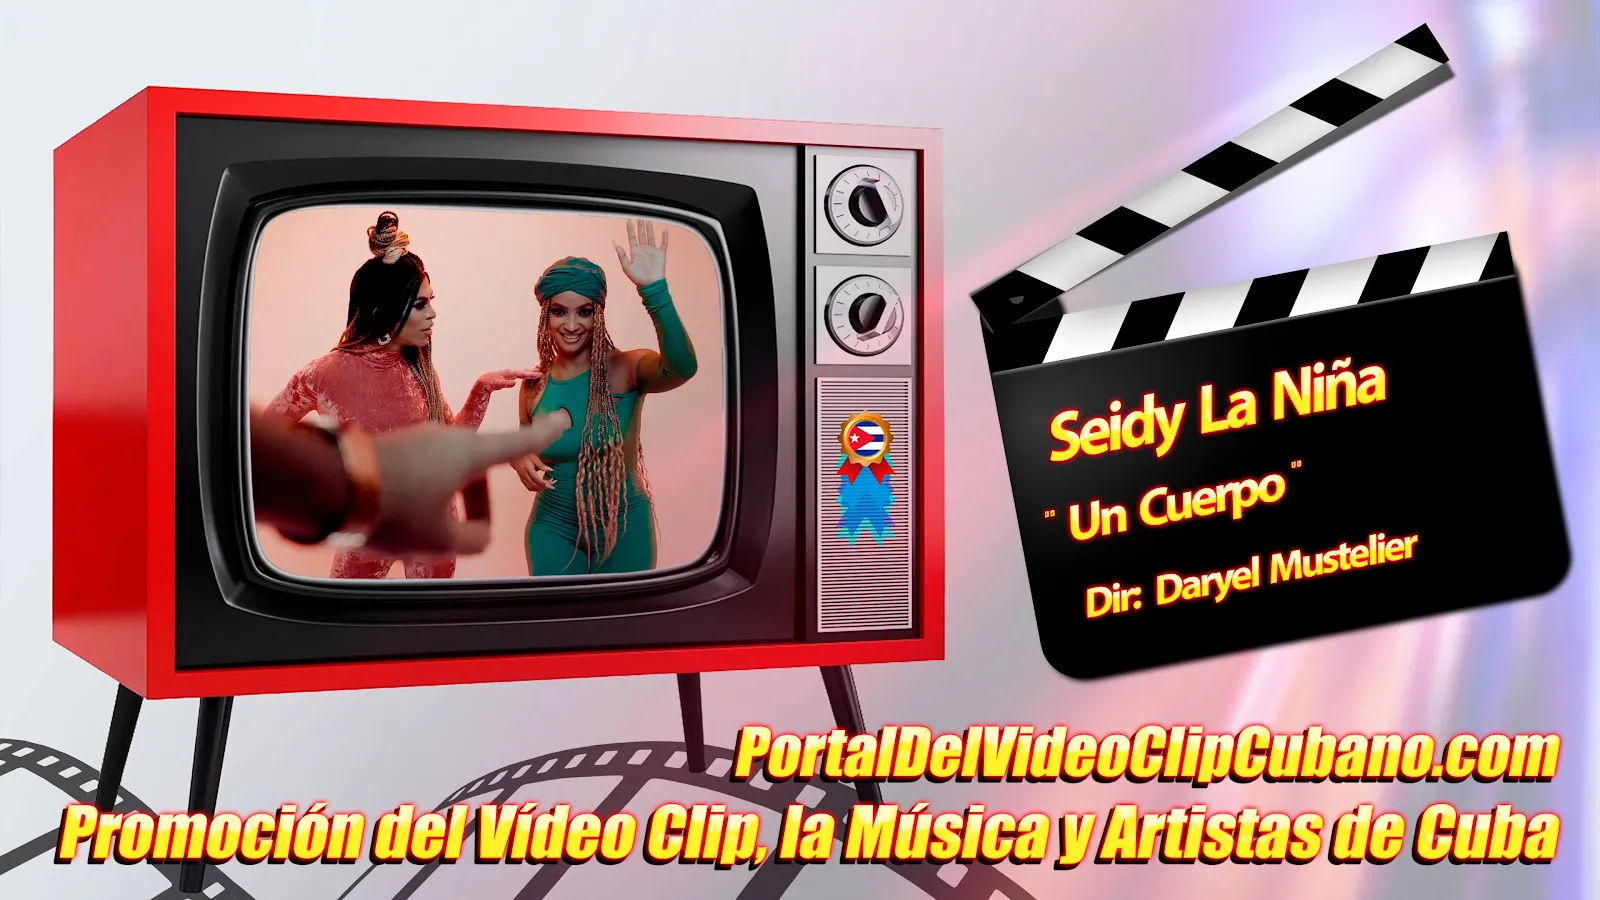 Seidy La Niña - ¨Un Cuerpo¨ - Director: Daryel Mustelier. Portal Del Vídeo Clip Cubano. Videoclip. Música Urbana Cubana. CUBA.